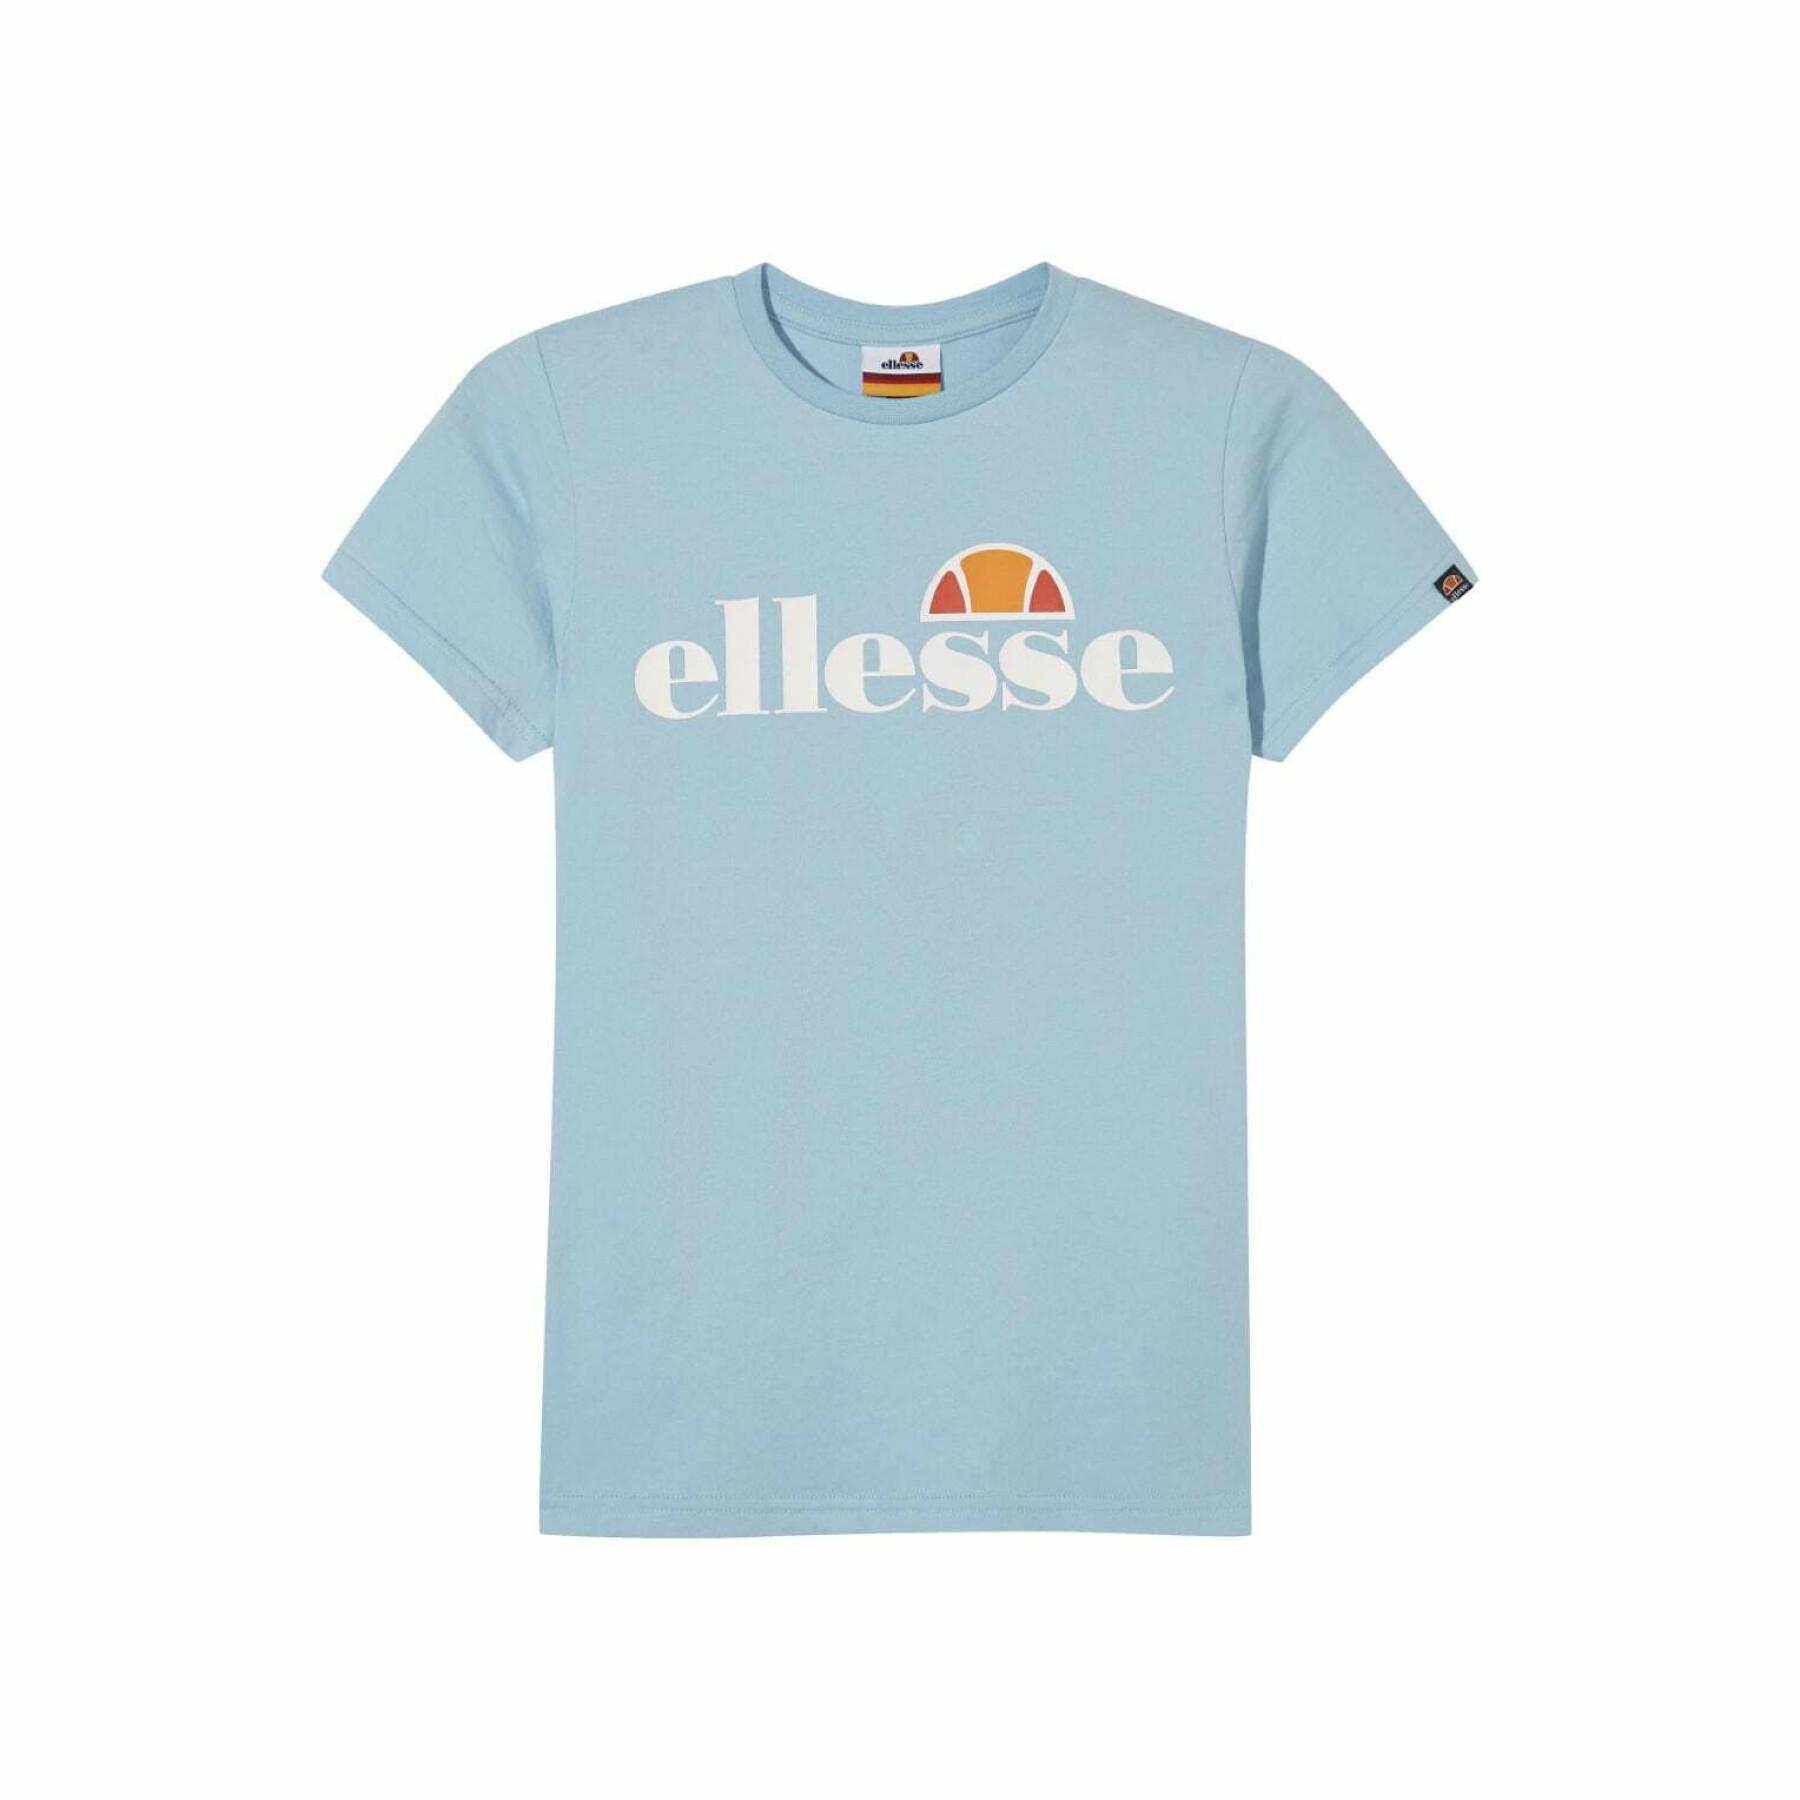 Kinder-T-shirt Ellesse Maila